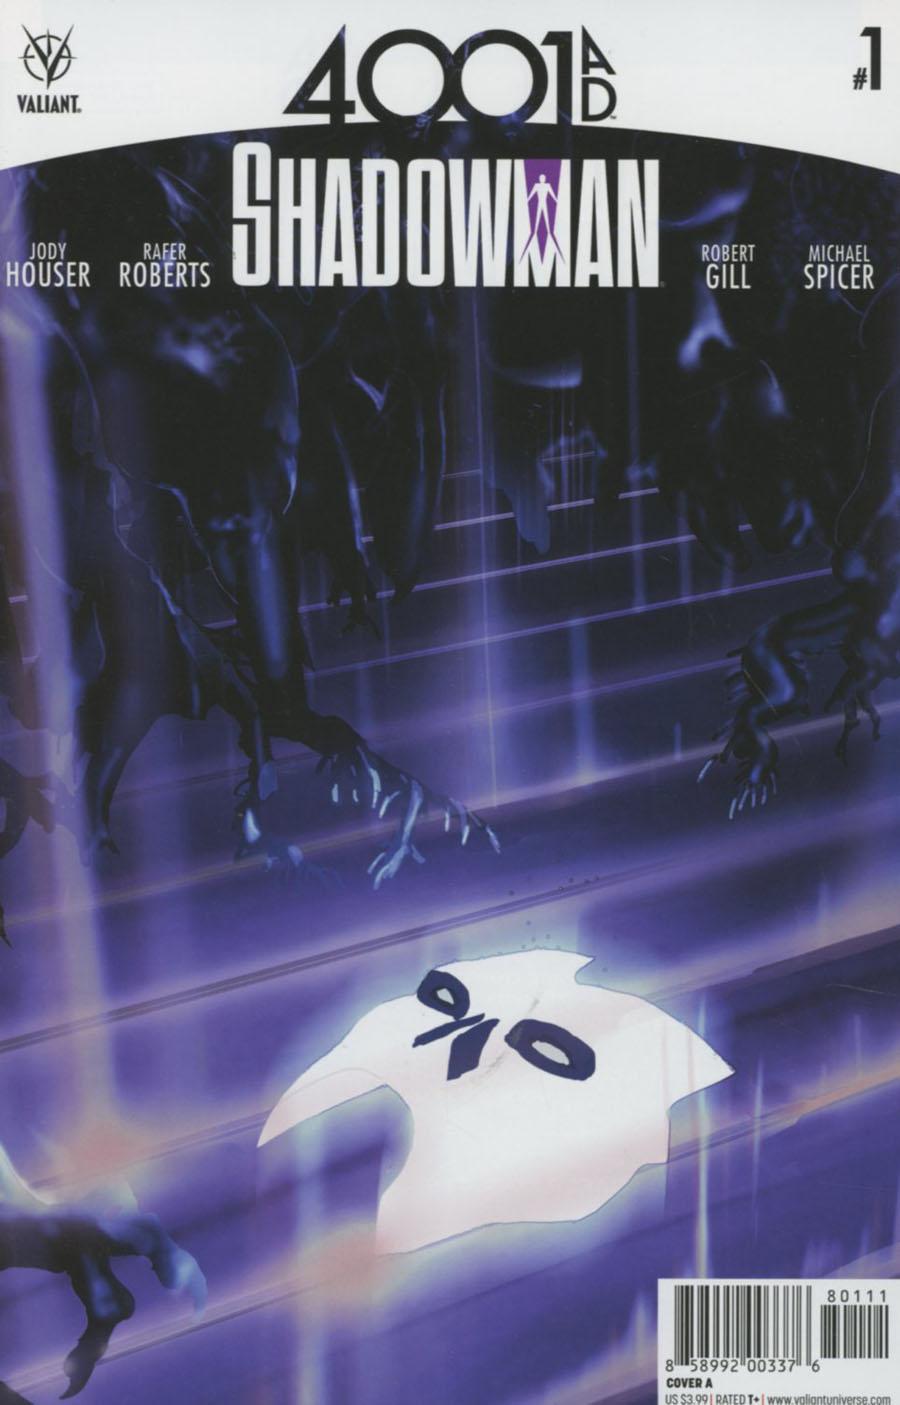 4001 AD Shadowman Vol. 1 #1